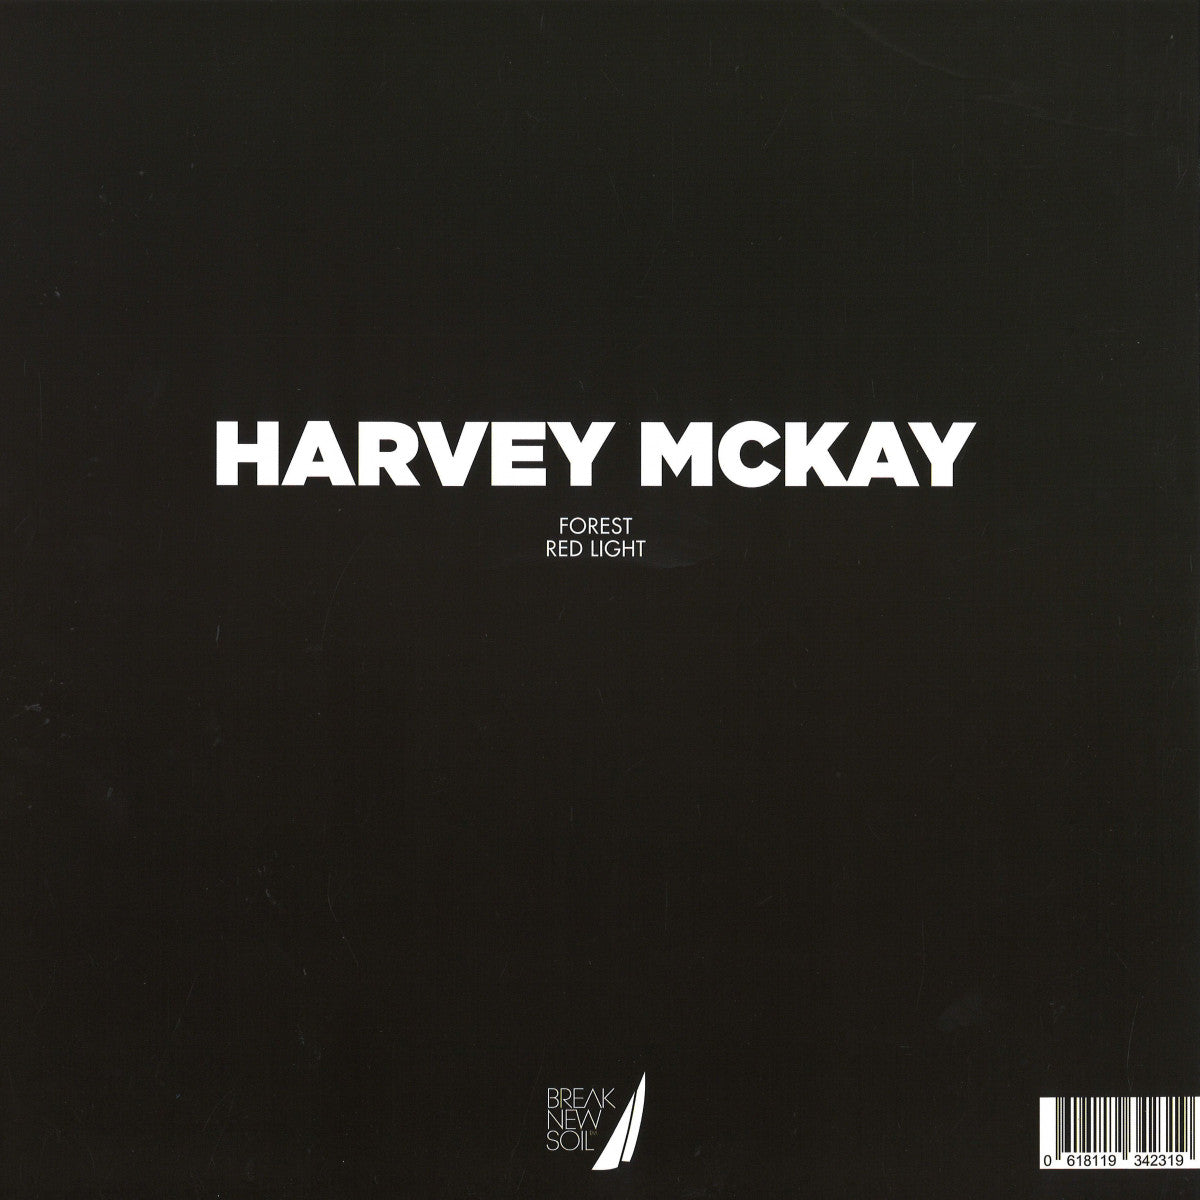 Harvey Mckay - Forest [Break New Soil]